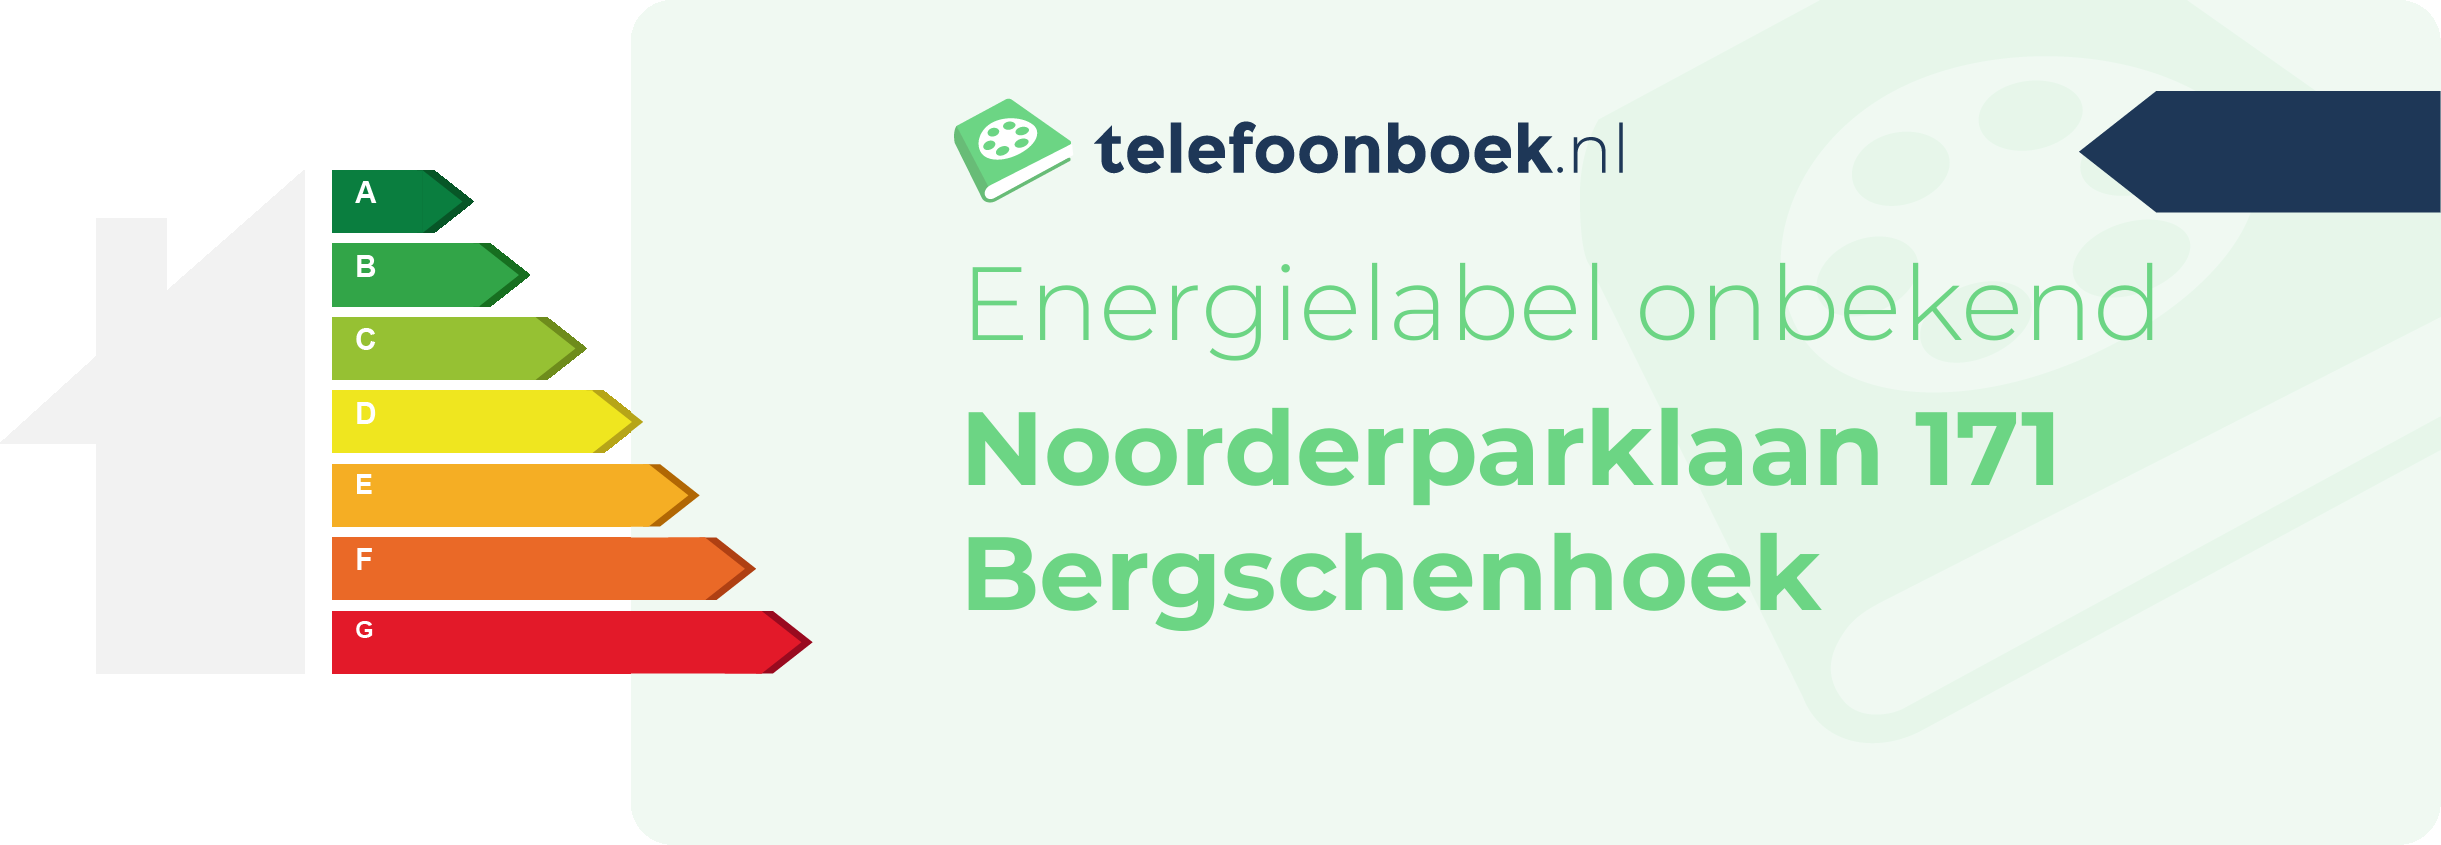 Energielabel Noorderparklaan 171 Bergschenhoek